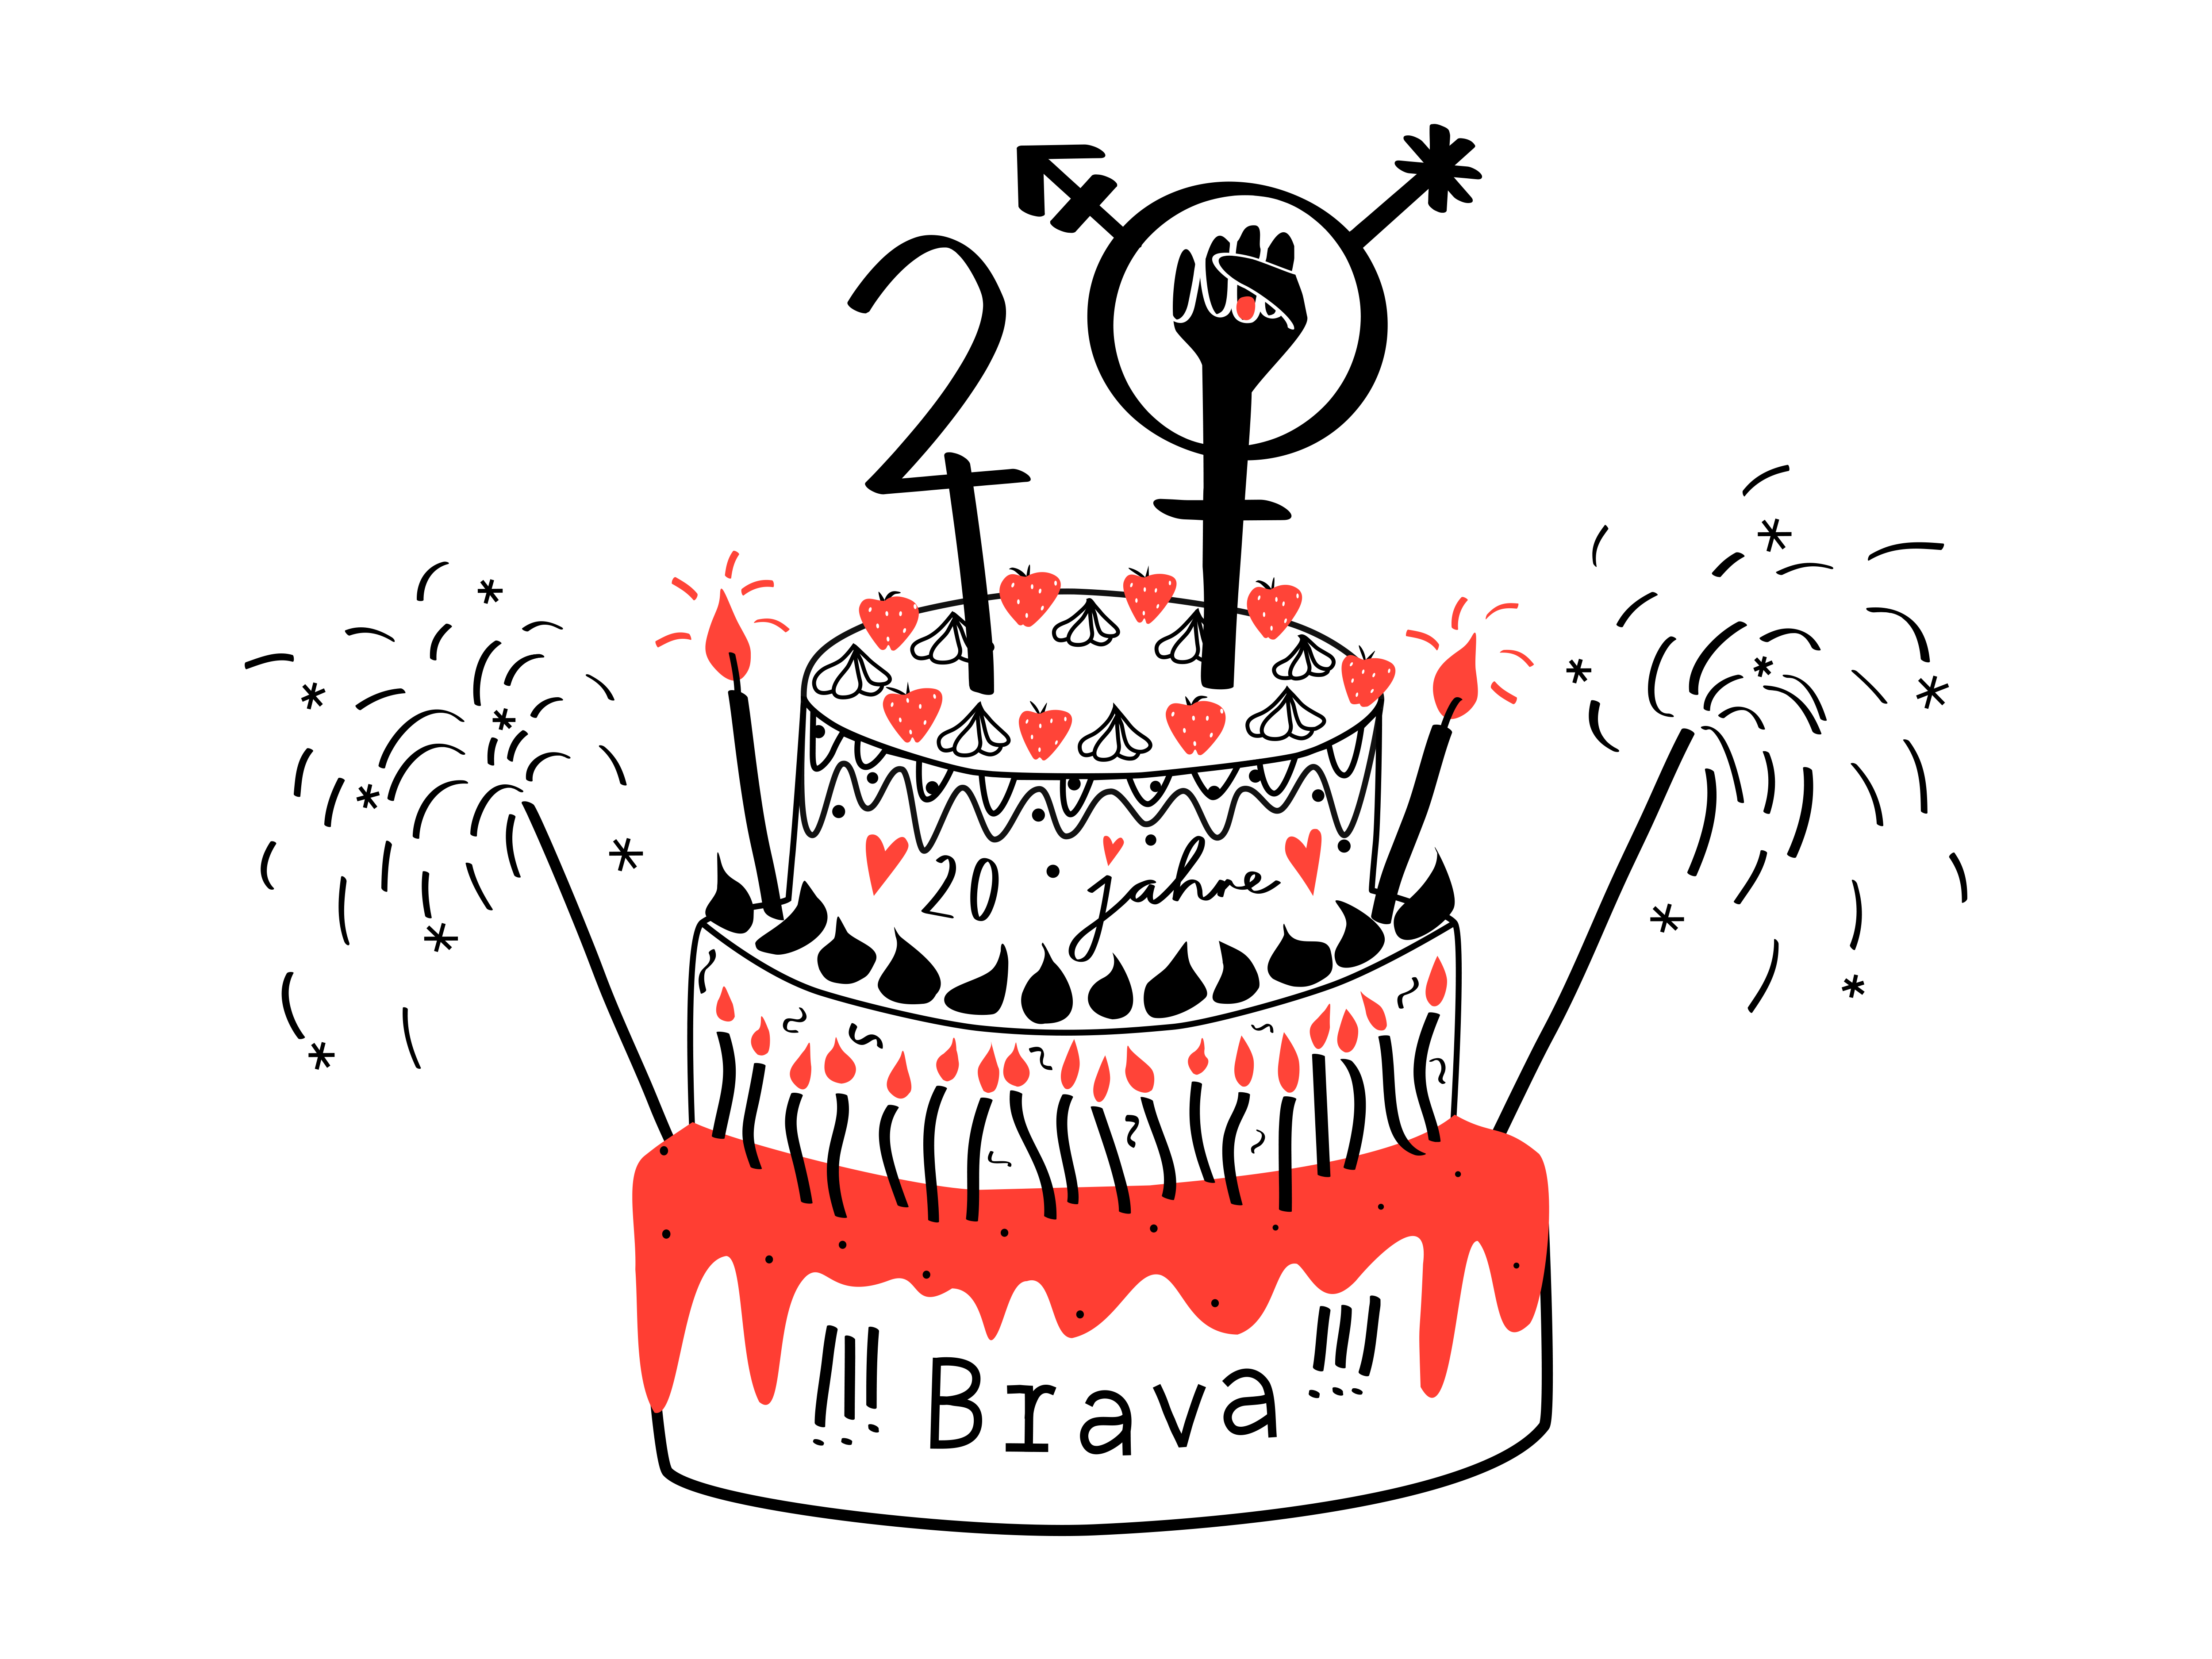 Auf weissem Hintergrund ist eine skizzierte rot-schwarze Torte zu sehen. Die Torte ist dreistöckig mit Wunderkerzen und der Aufschrift 20 (die Null gefüllt mit einer erhobenen Faust und einem queerfeministischen Symbol) und !!!Brava!!!